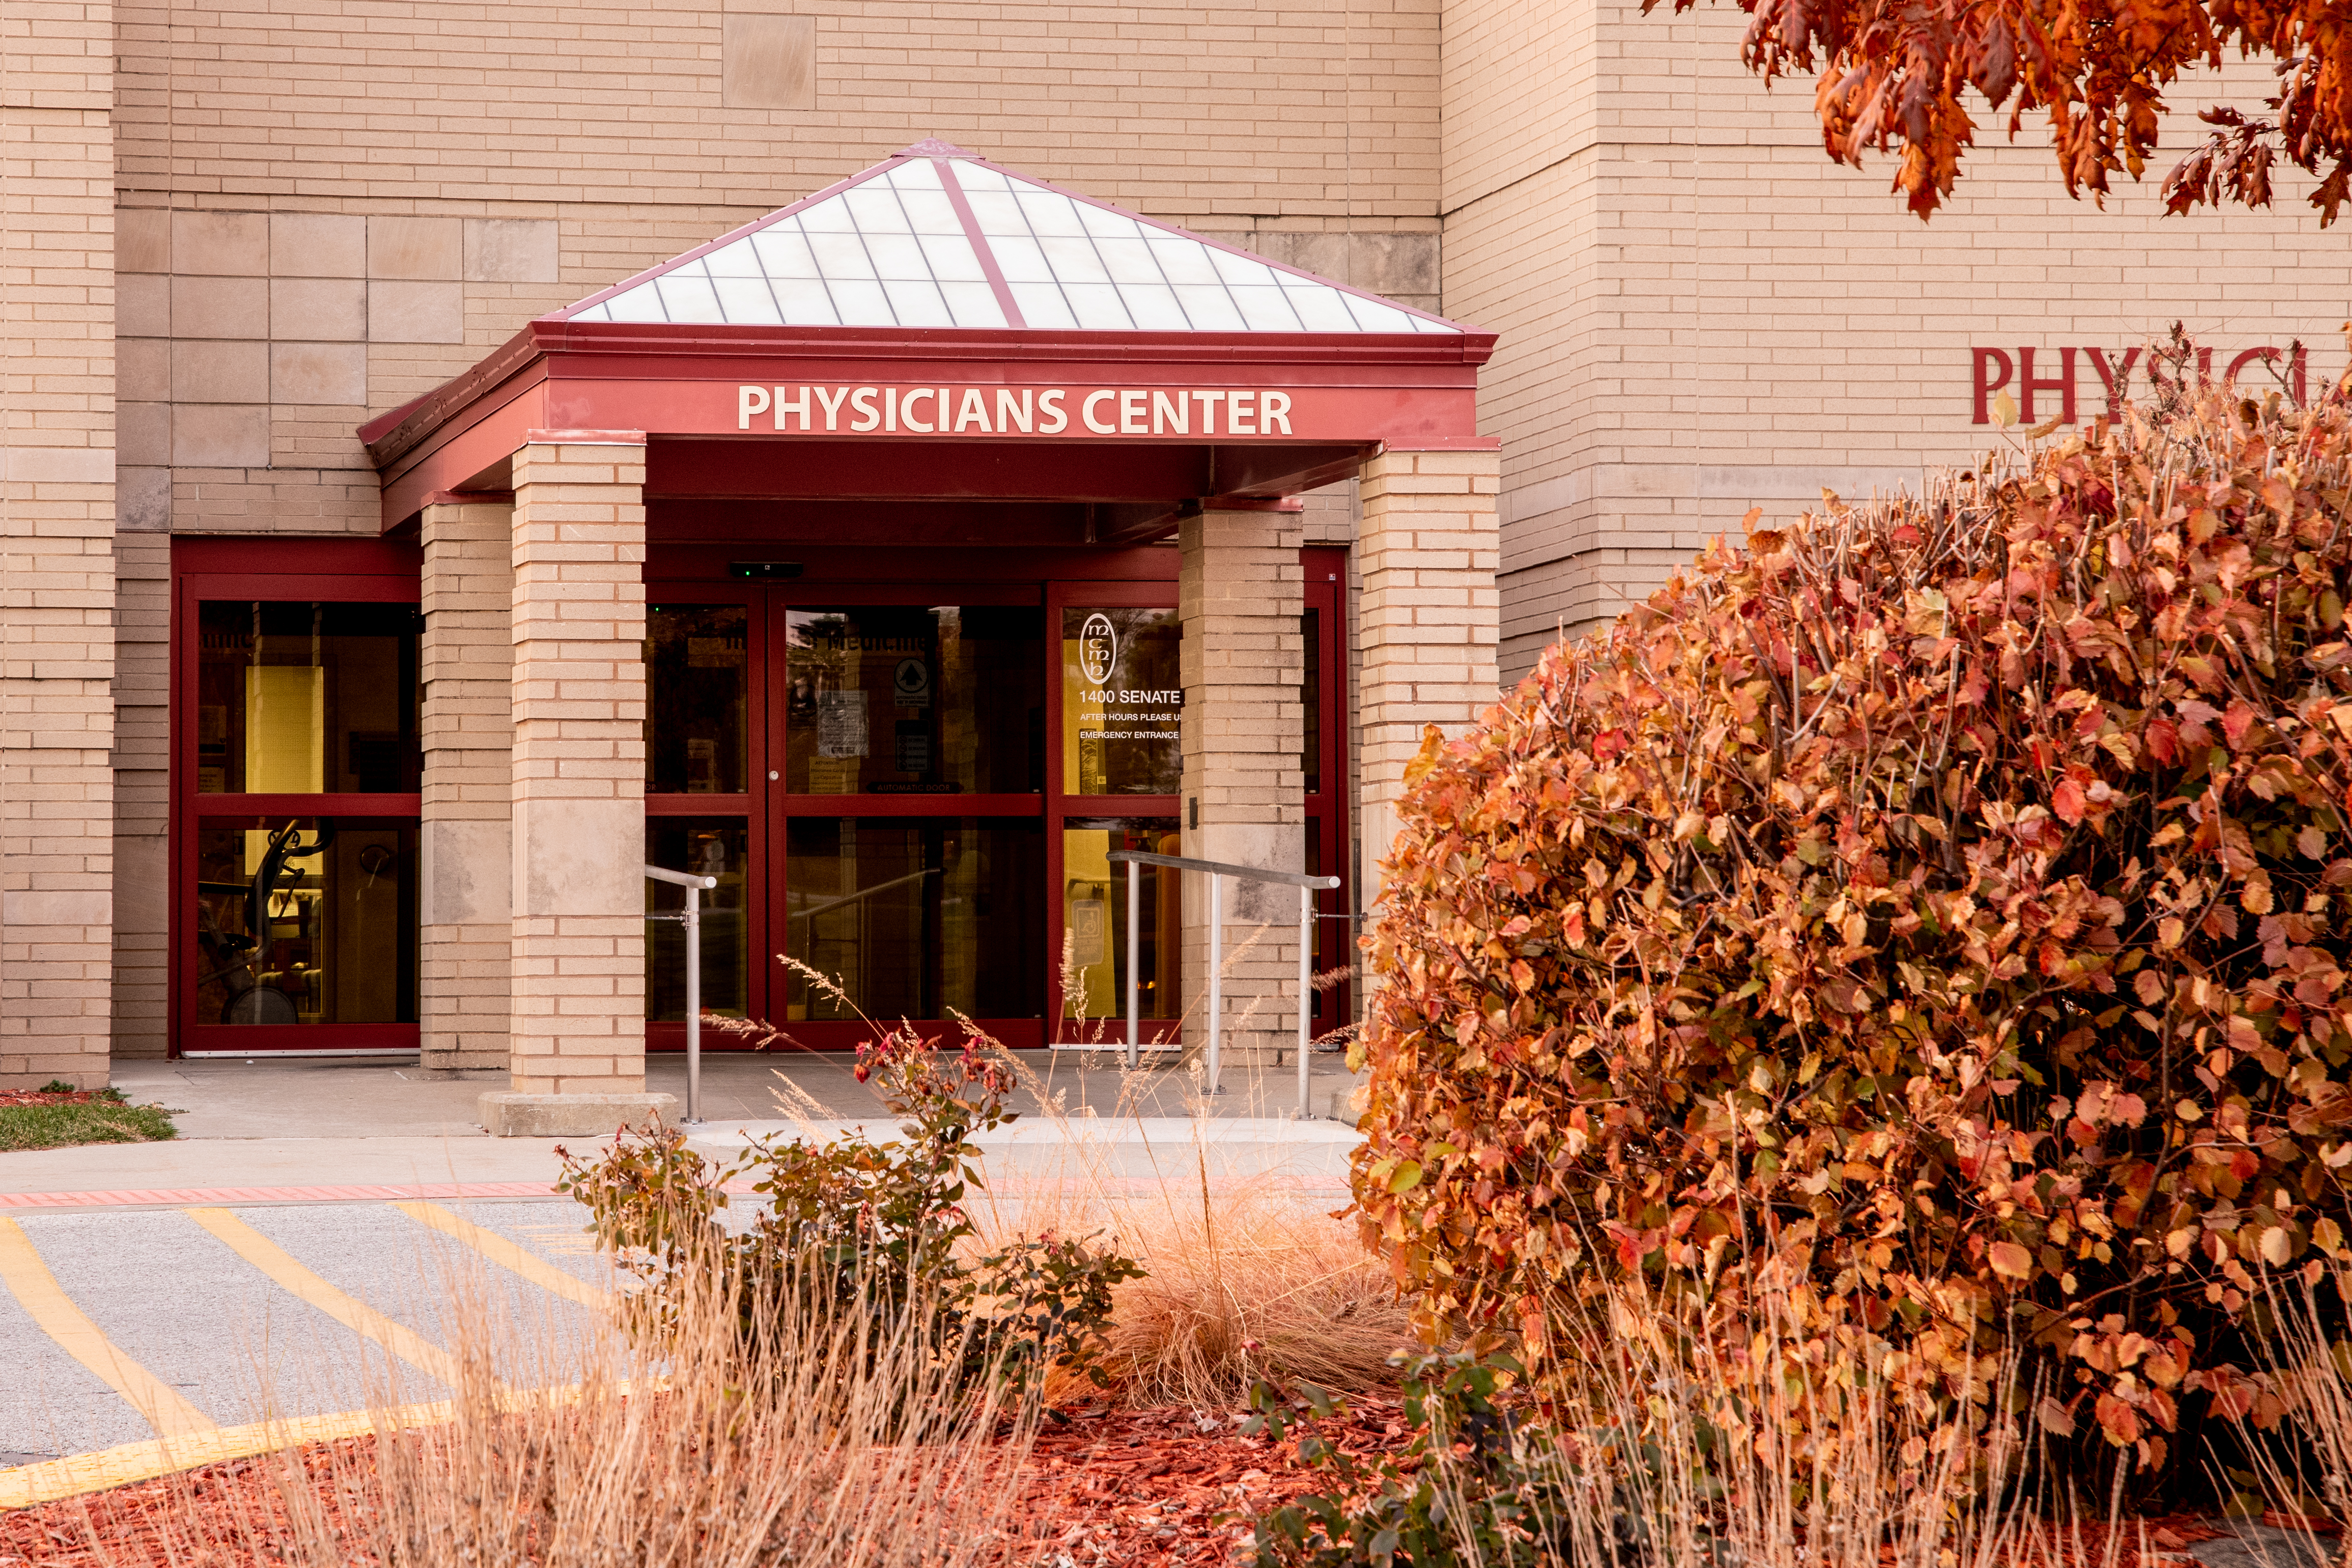 Physicians Center Entrance